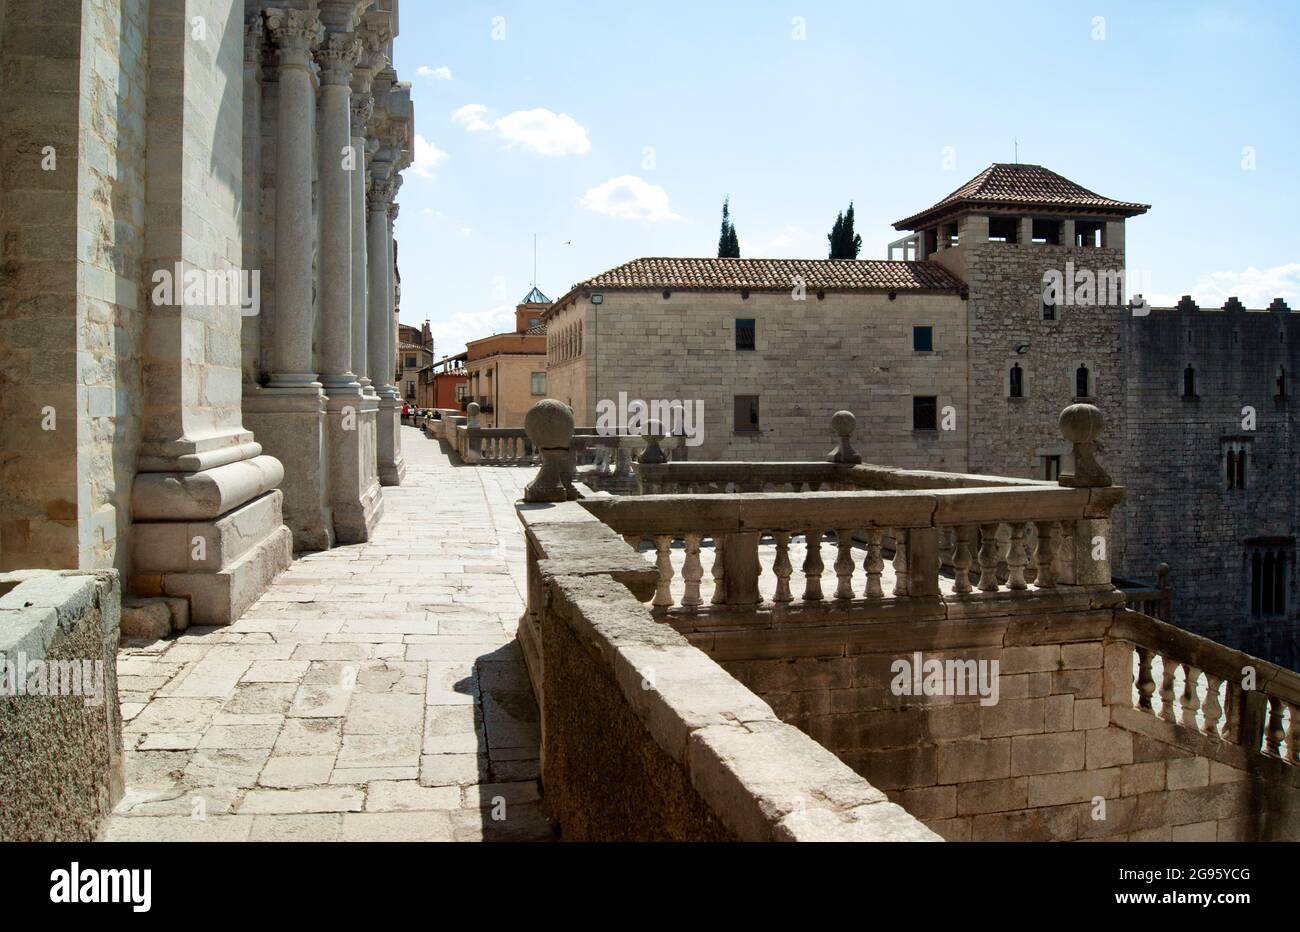 Spagna – Girona. La scalinata che conduce alla cattedrale medievale. La terrazza appena prima dell'ingresso. Foto Stock